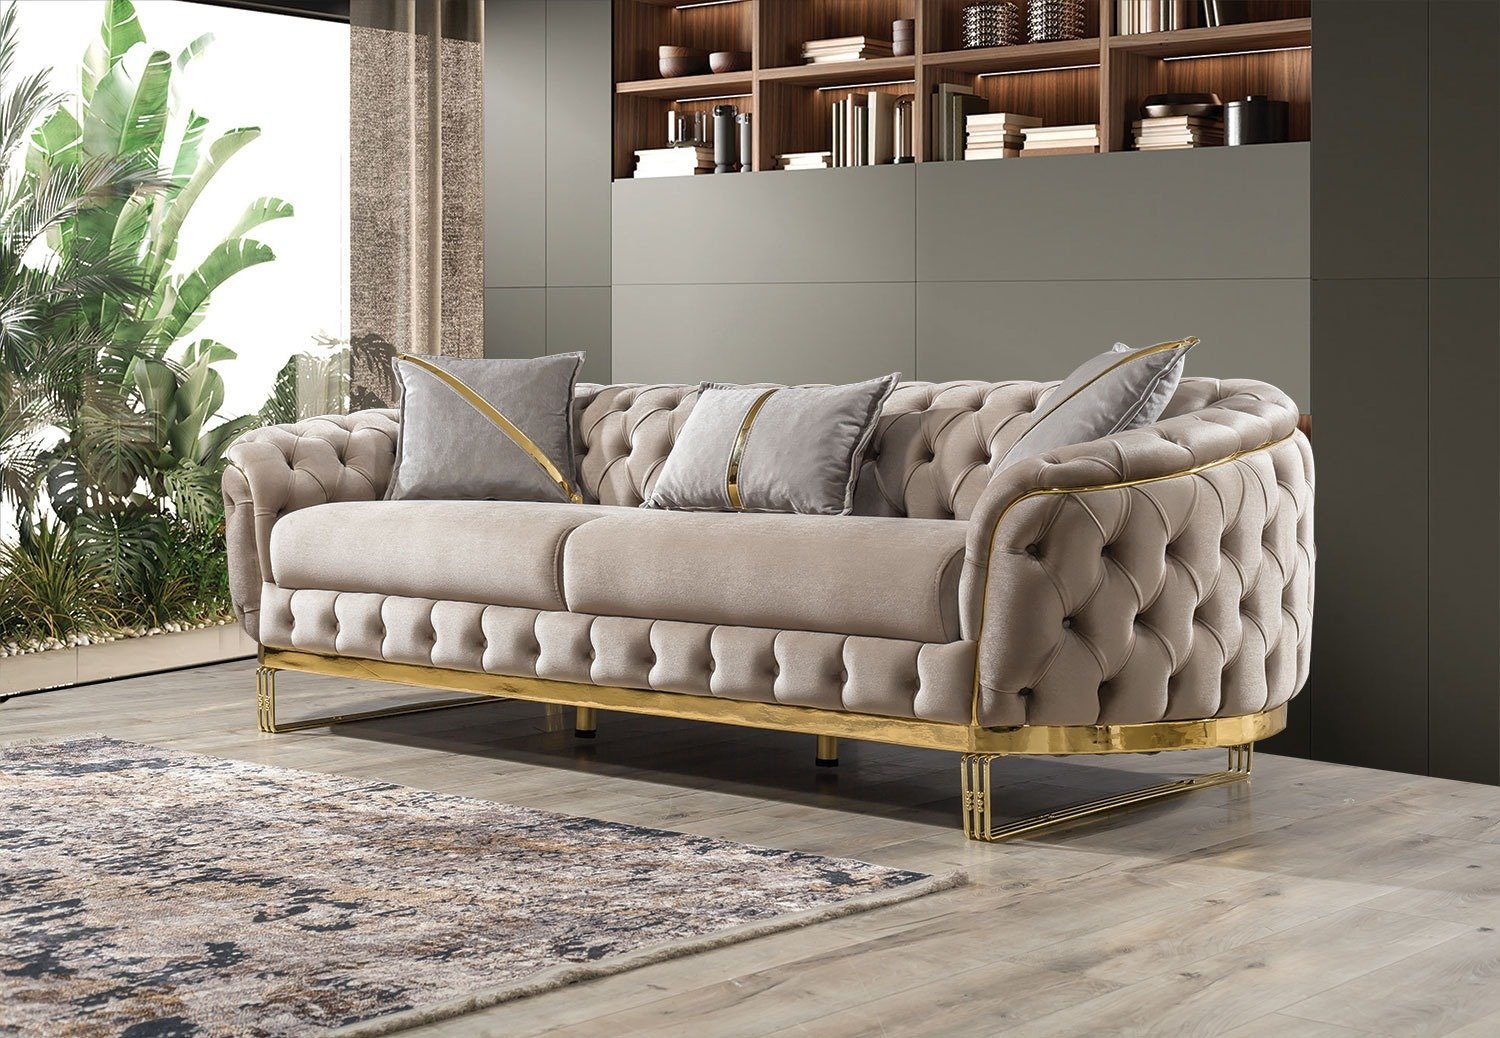 2-Sitzer, Villa Fairy, Turkey, Beige in Möbel handgefertigt Sofa Stk. Made Quality 1